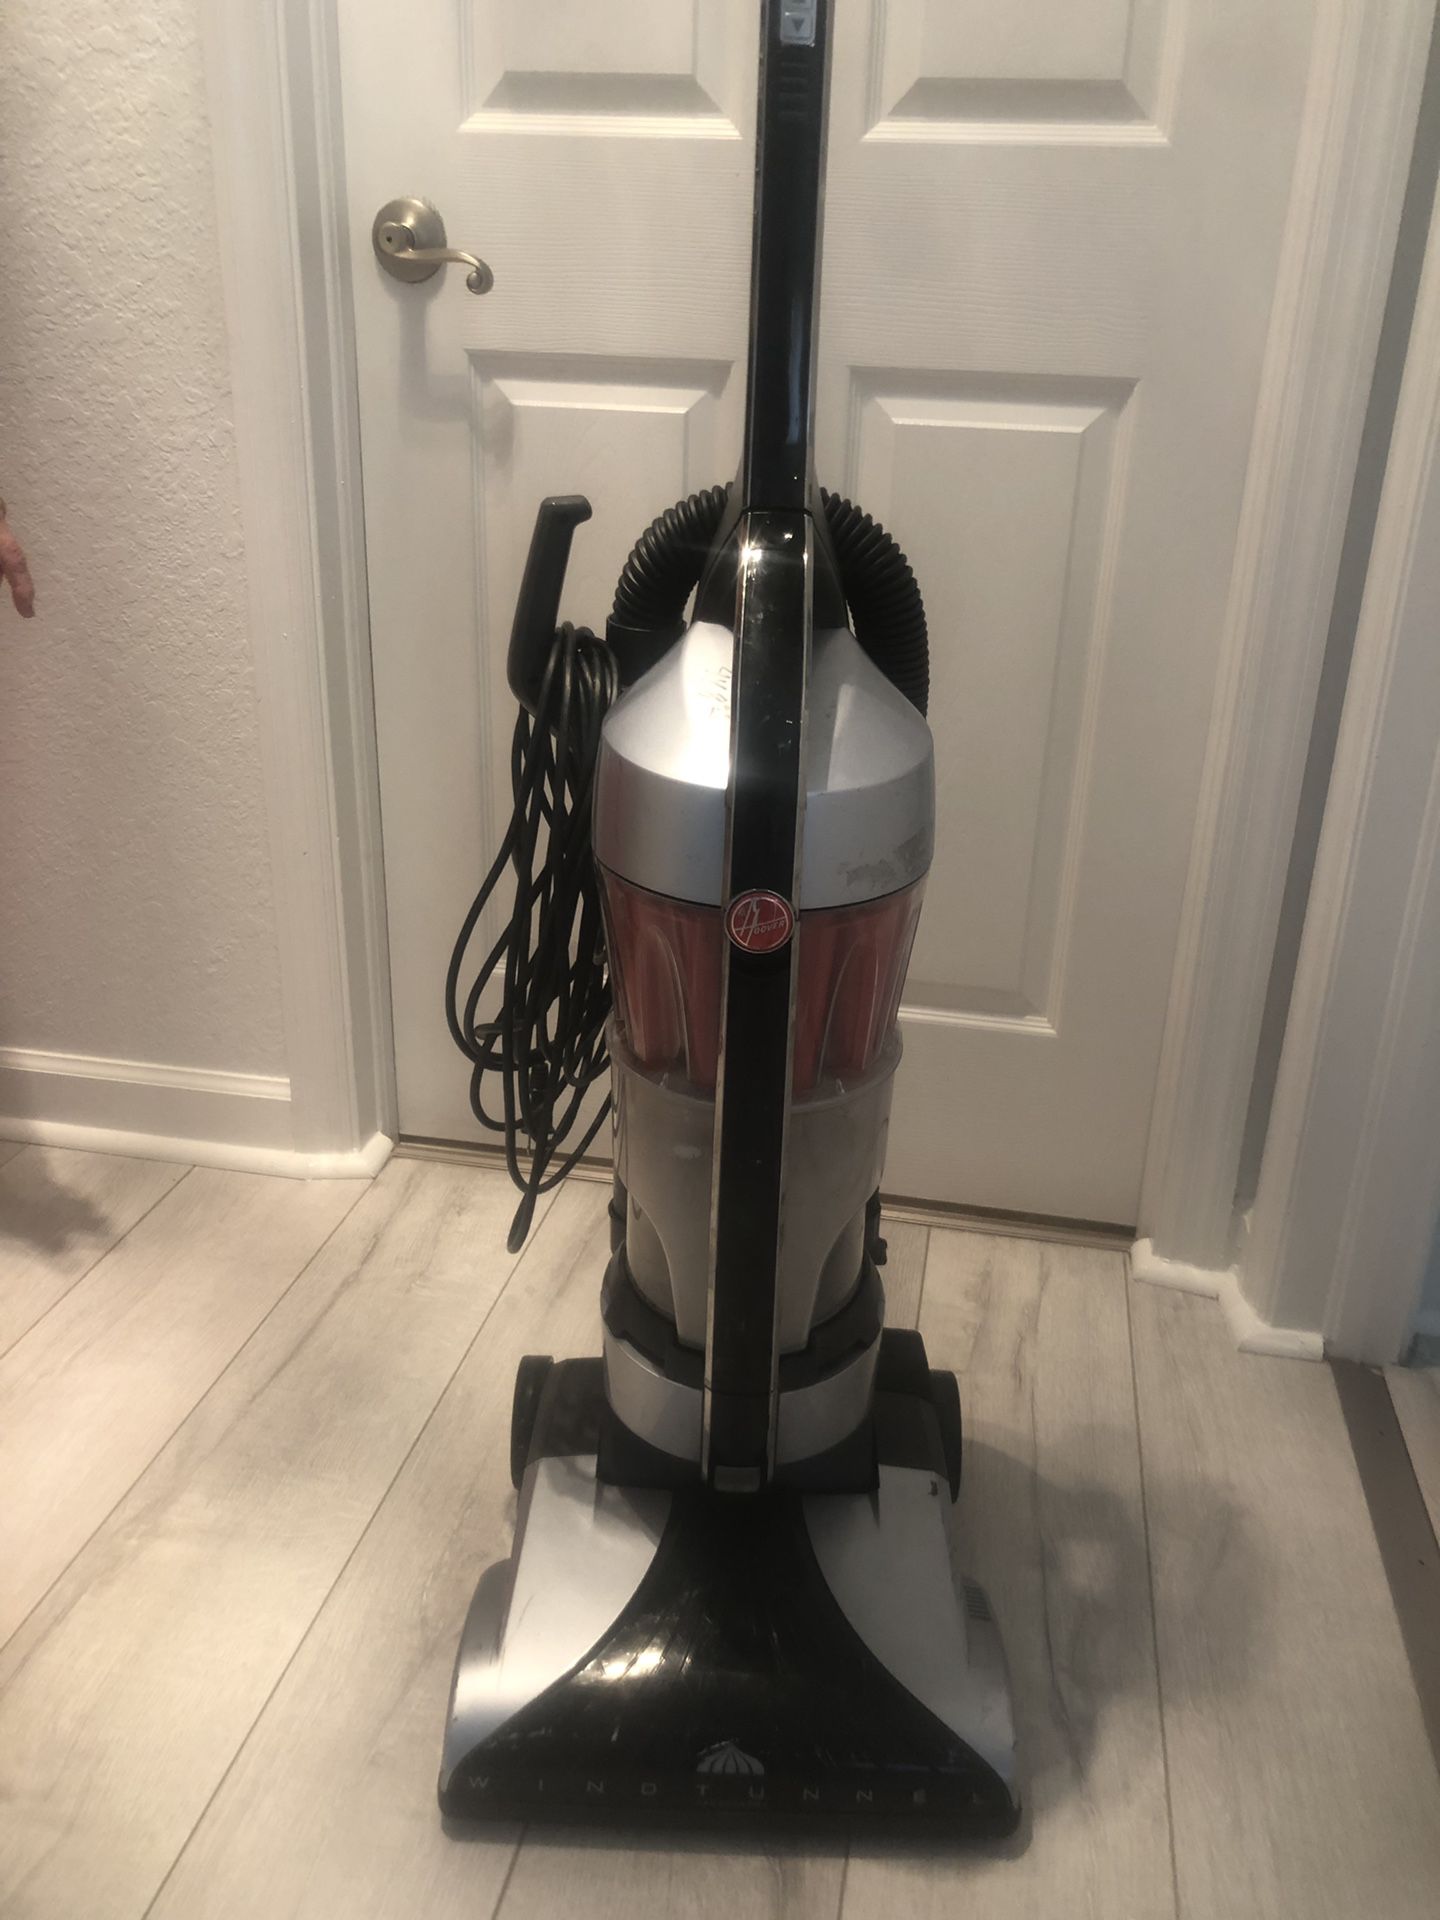 Hoover black silver vacuum cleaner